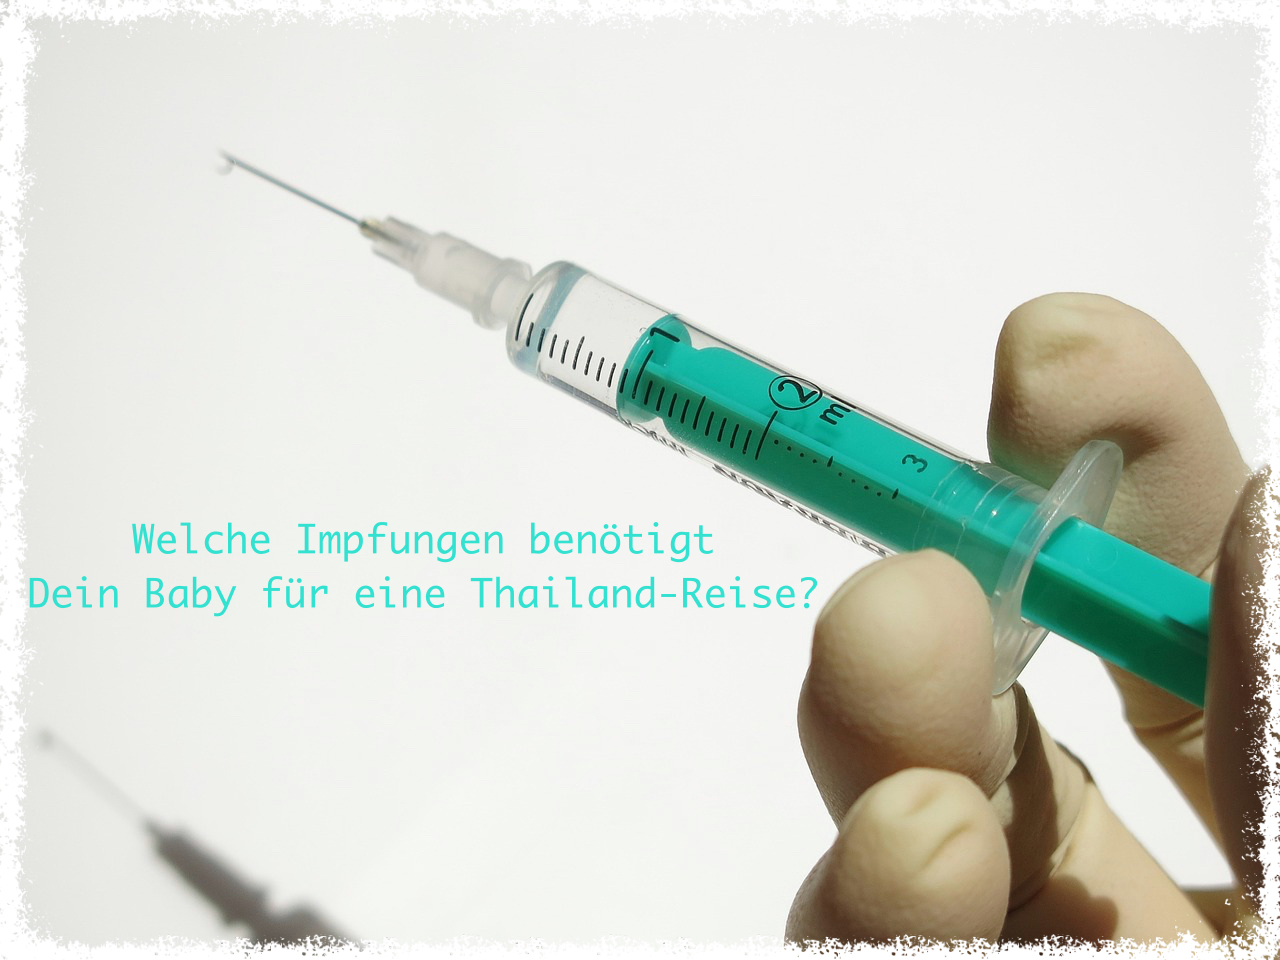 Impfungen für Dein Baby auf einer Thailand-Reise